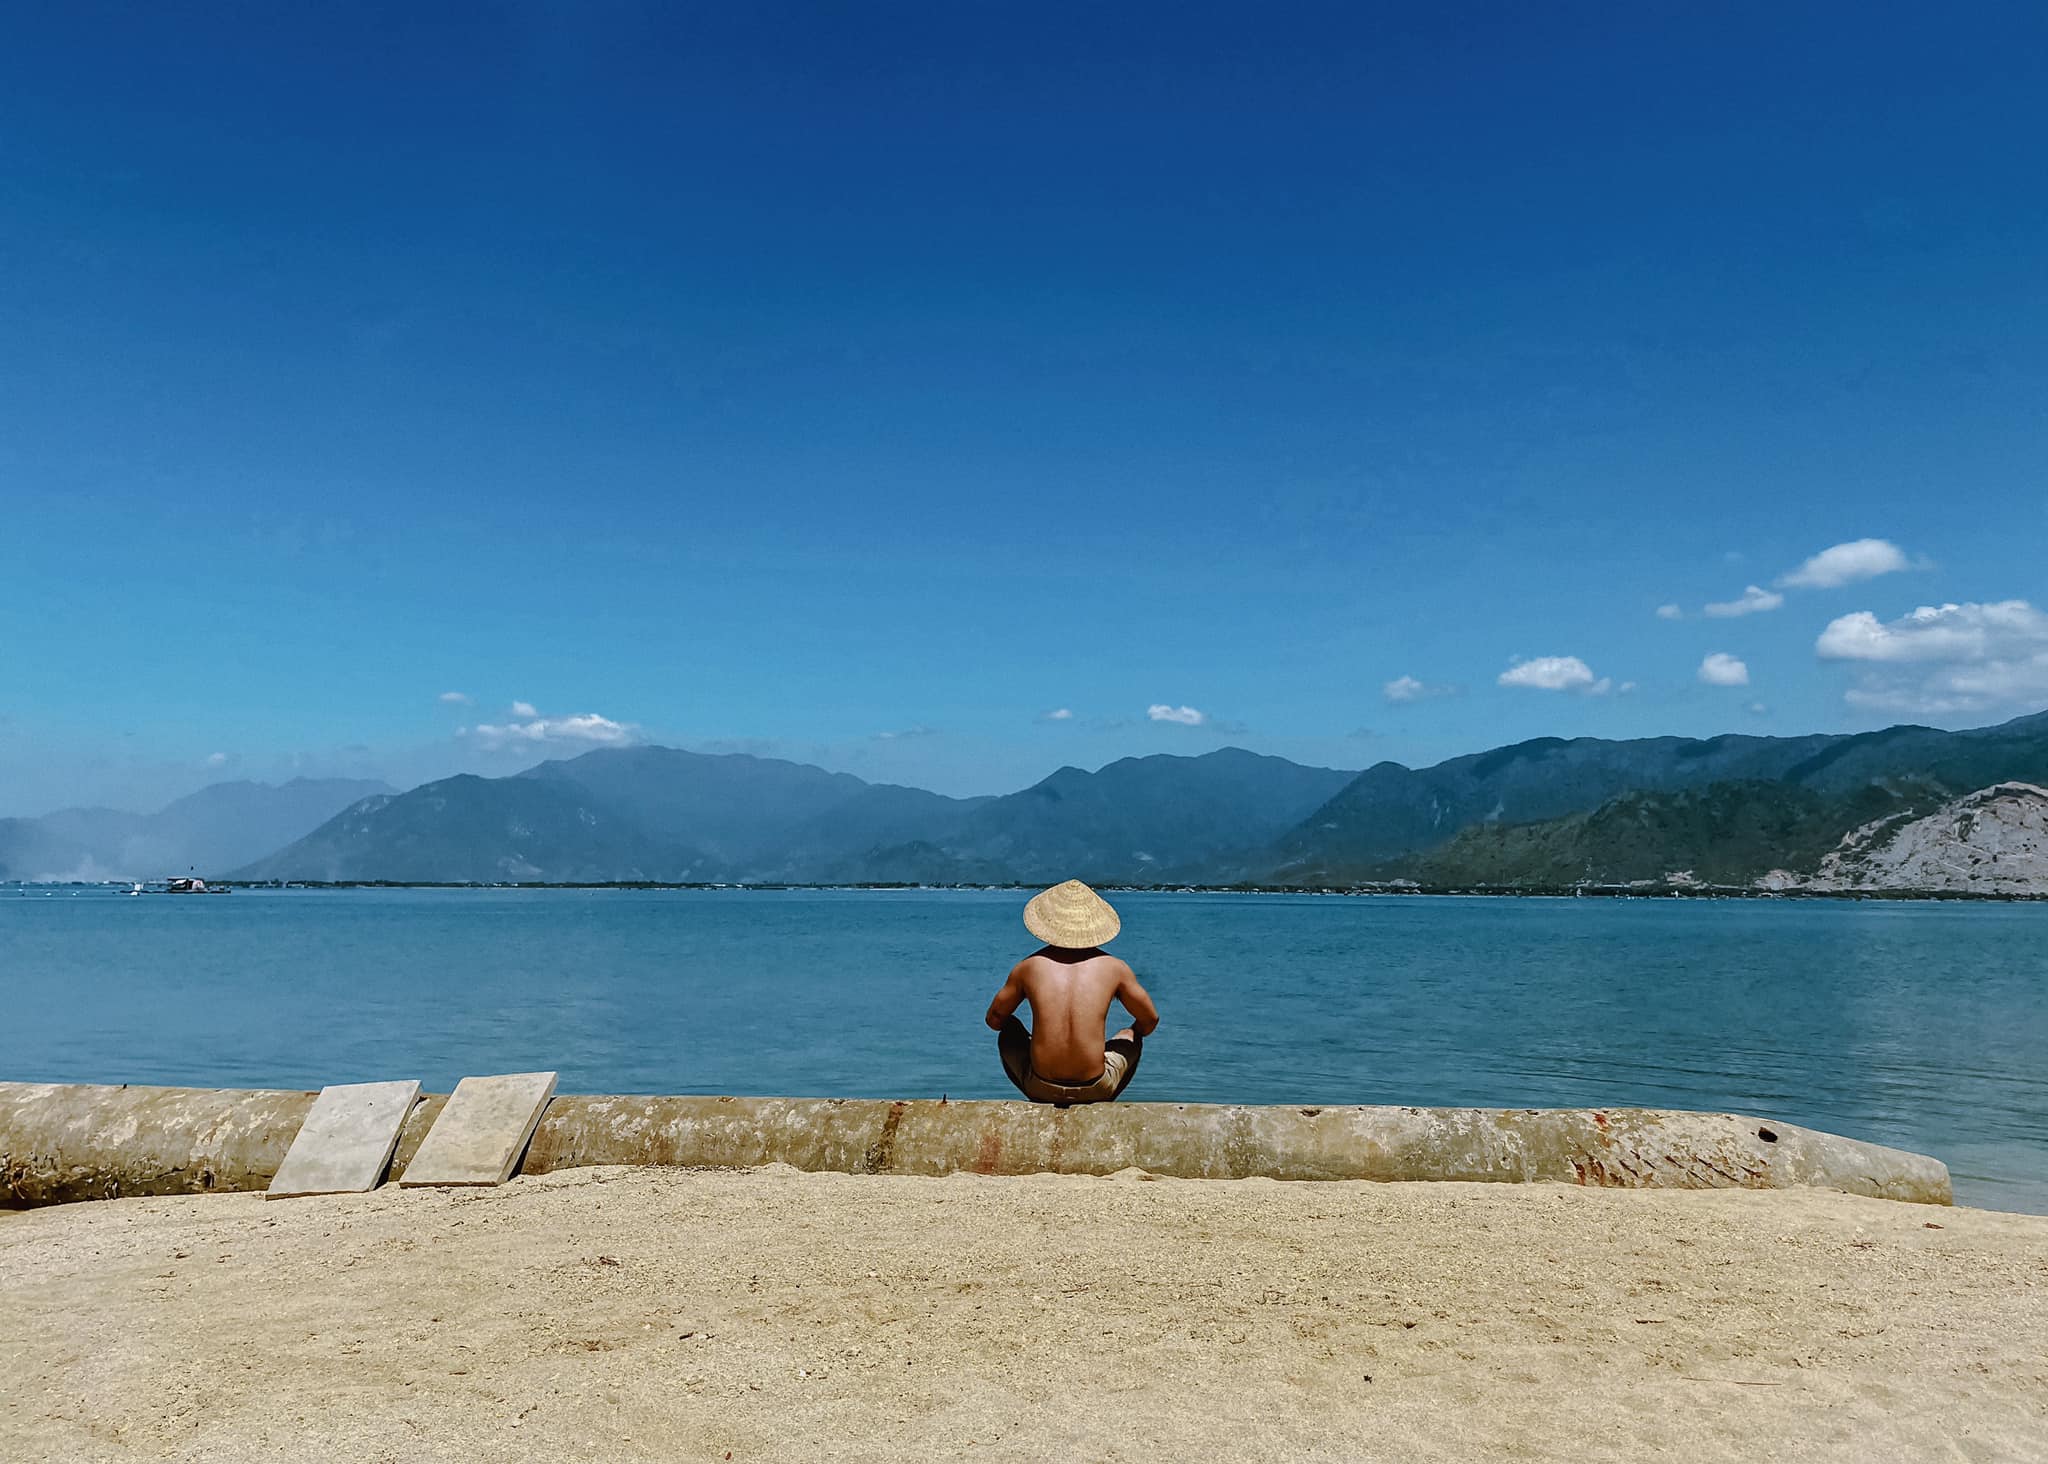 Khám phá vẻ đẹp độc đáo của đảo Điệp Sơn - Nha Trang qua bộ ảnh của Cường Quốc Phạm 5